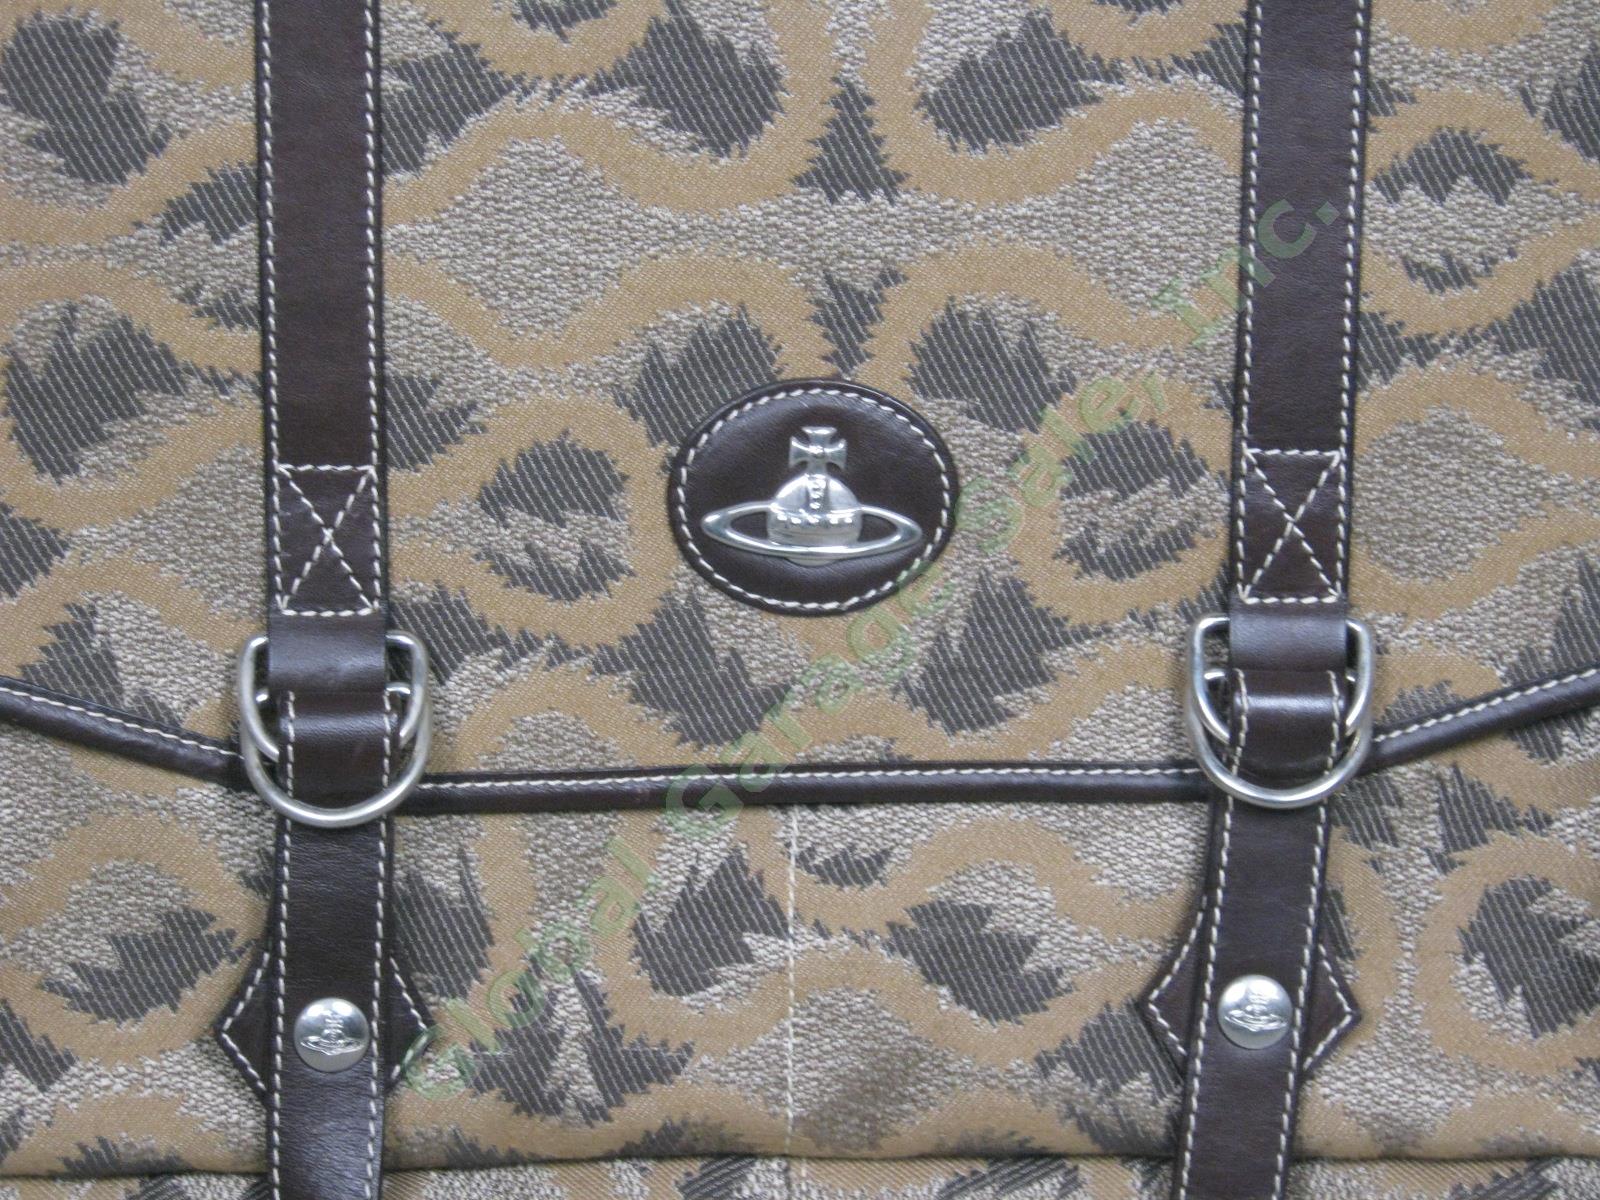 NEW Vivienne Westwood 2 Sided Shoulder Messenger Travel Bag Leather Trim Italy 1